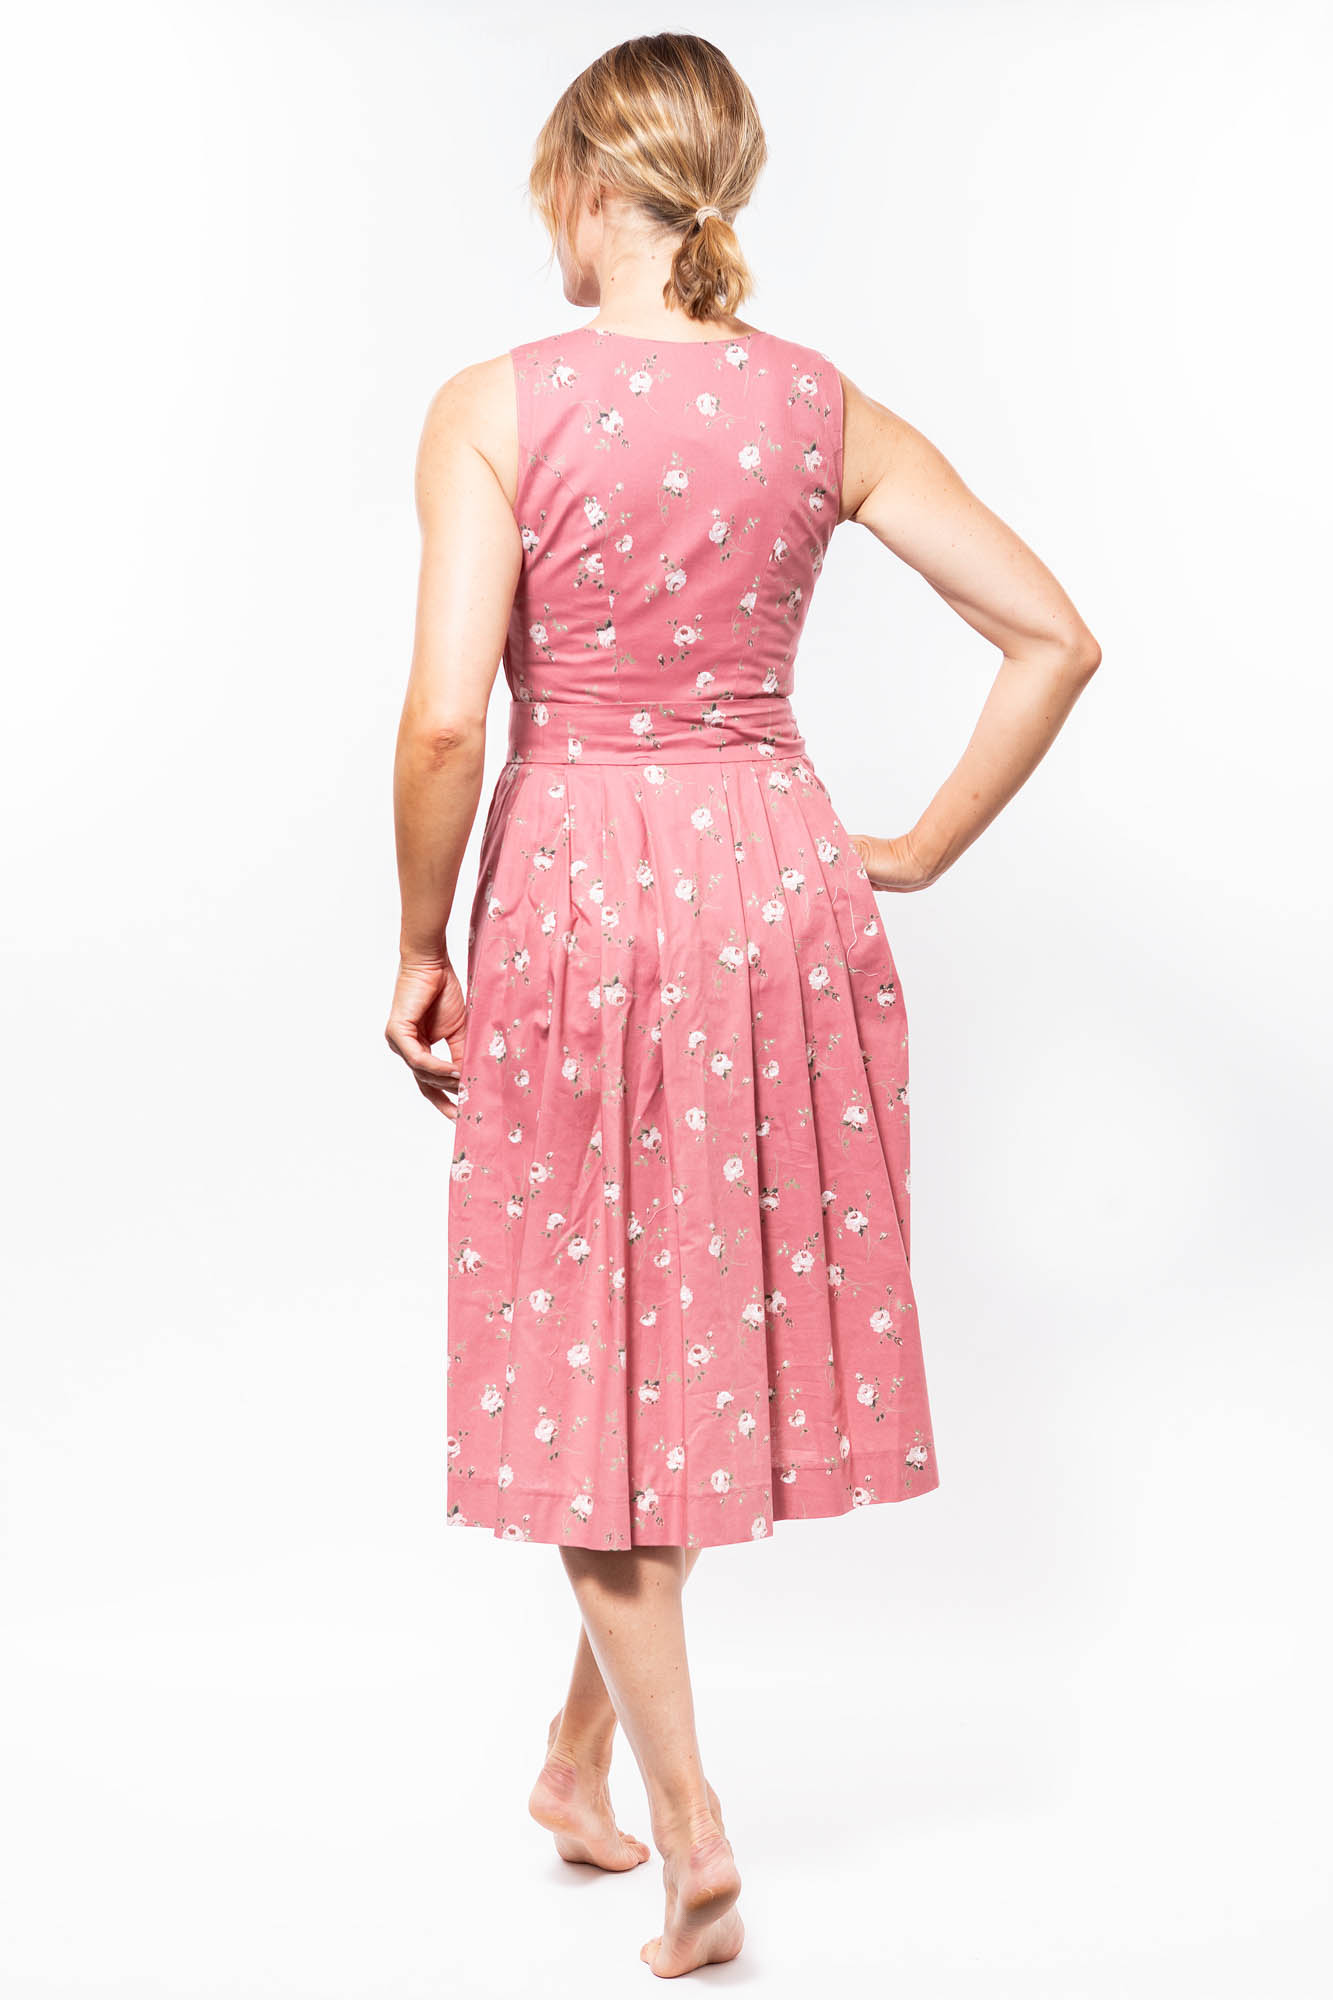 Hiebaum Trachtenkleid Kleid rosé geblümt